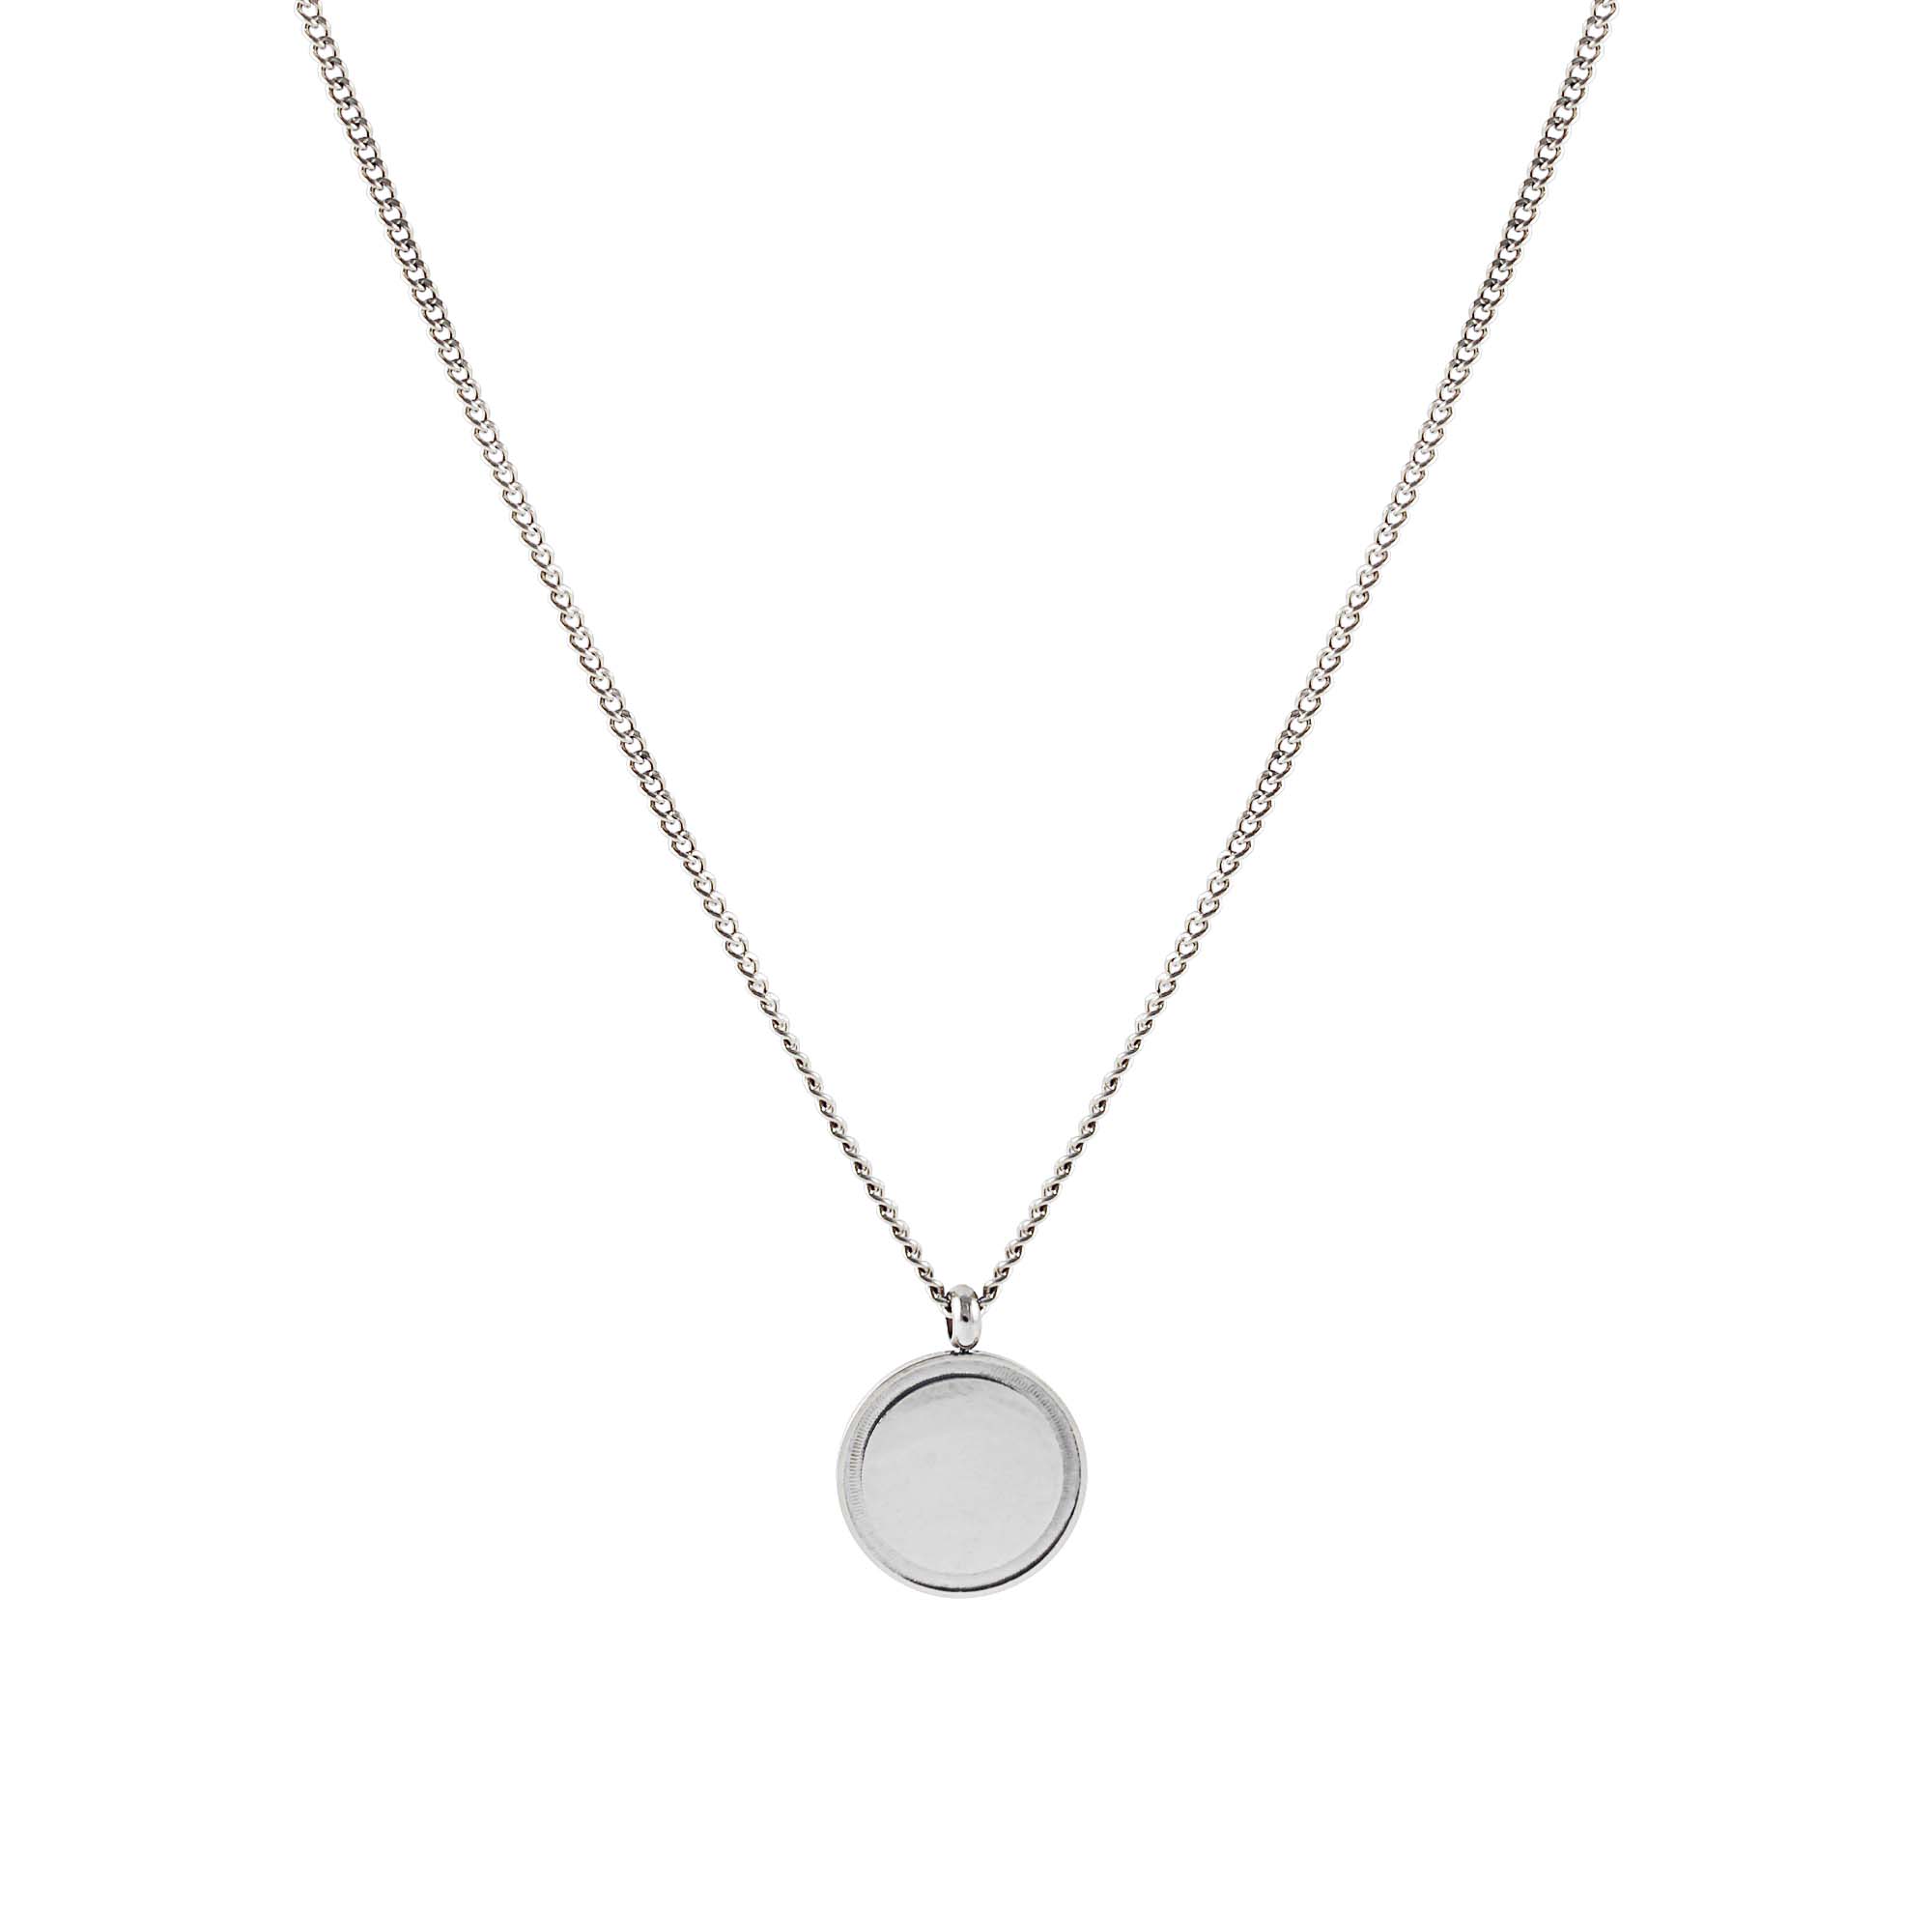 FJ Watches elbe necklace cuban link chain silver men 2mm 45cm 55cm pendant round minimalist